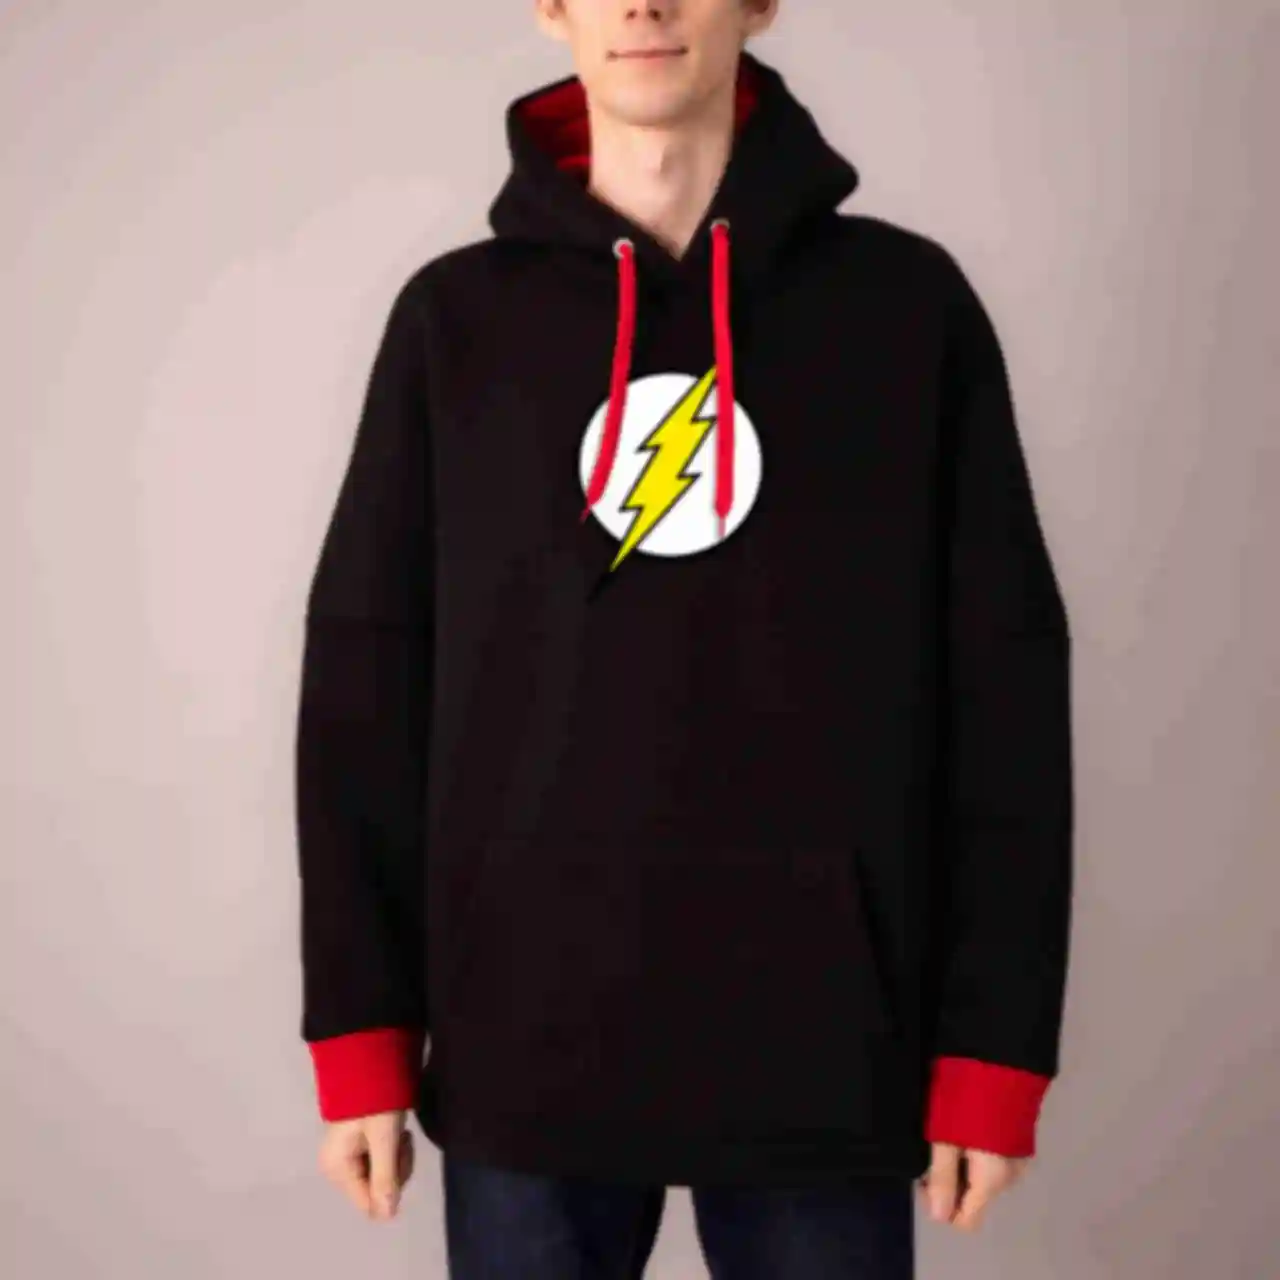 Худі №11 • Логотип Флеша • Одяг з принтом ДС • Мерч з супергероями Flash • Подарунок DC АРХІВ